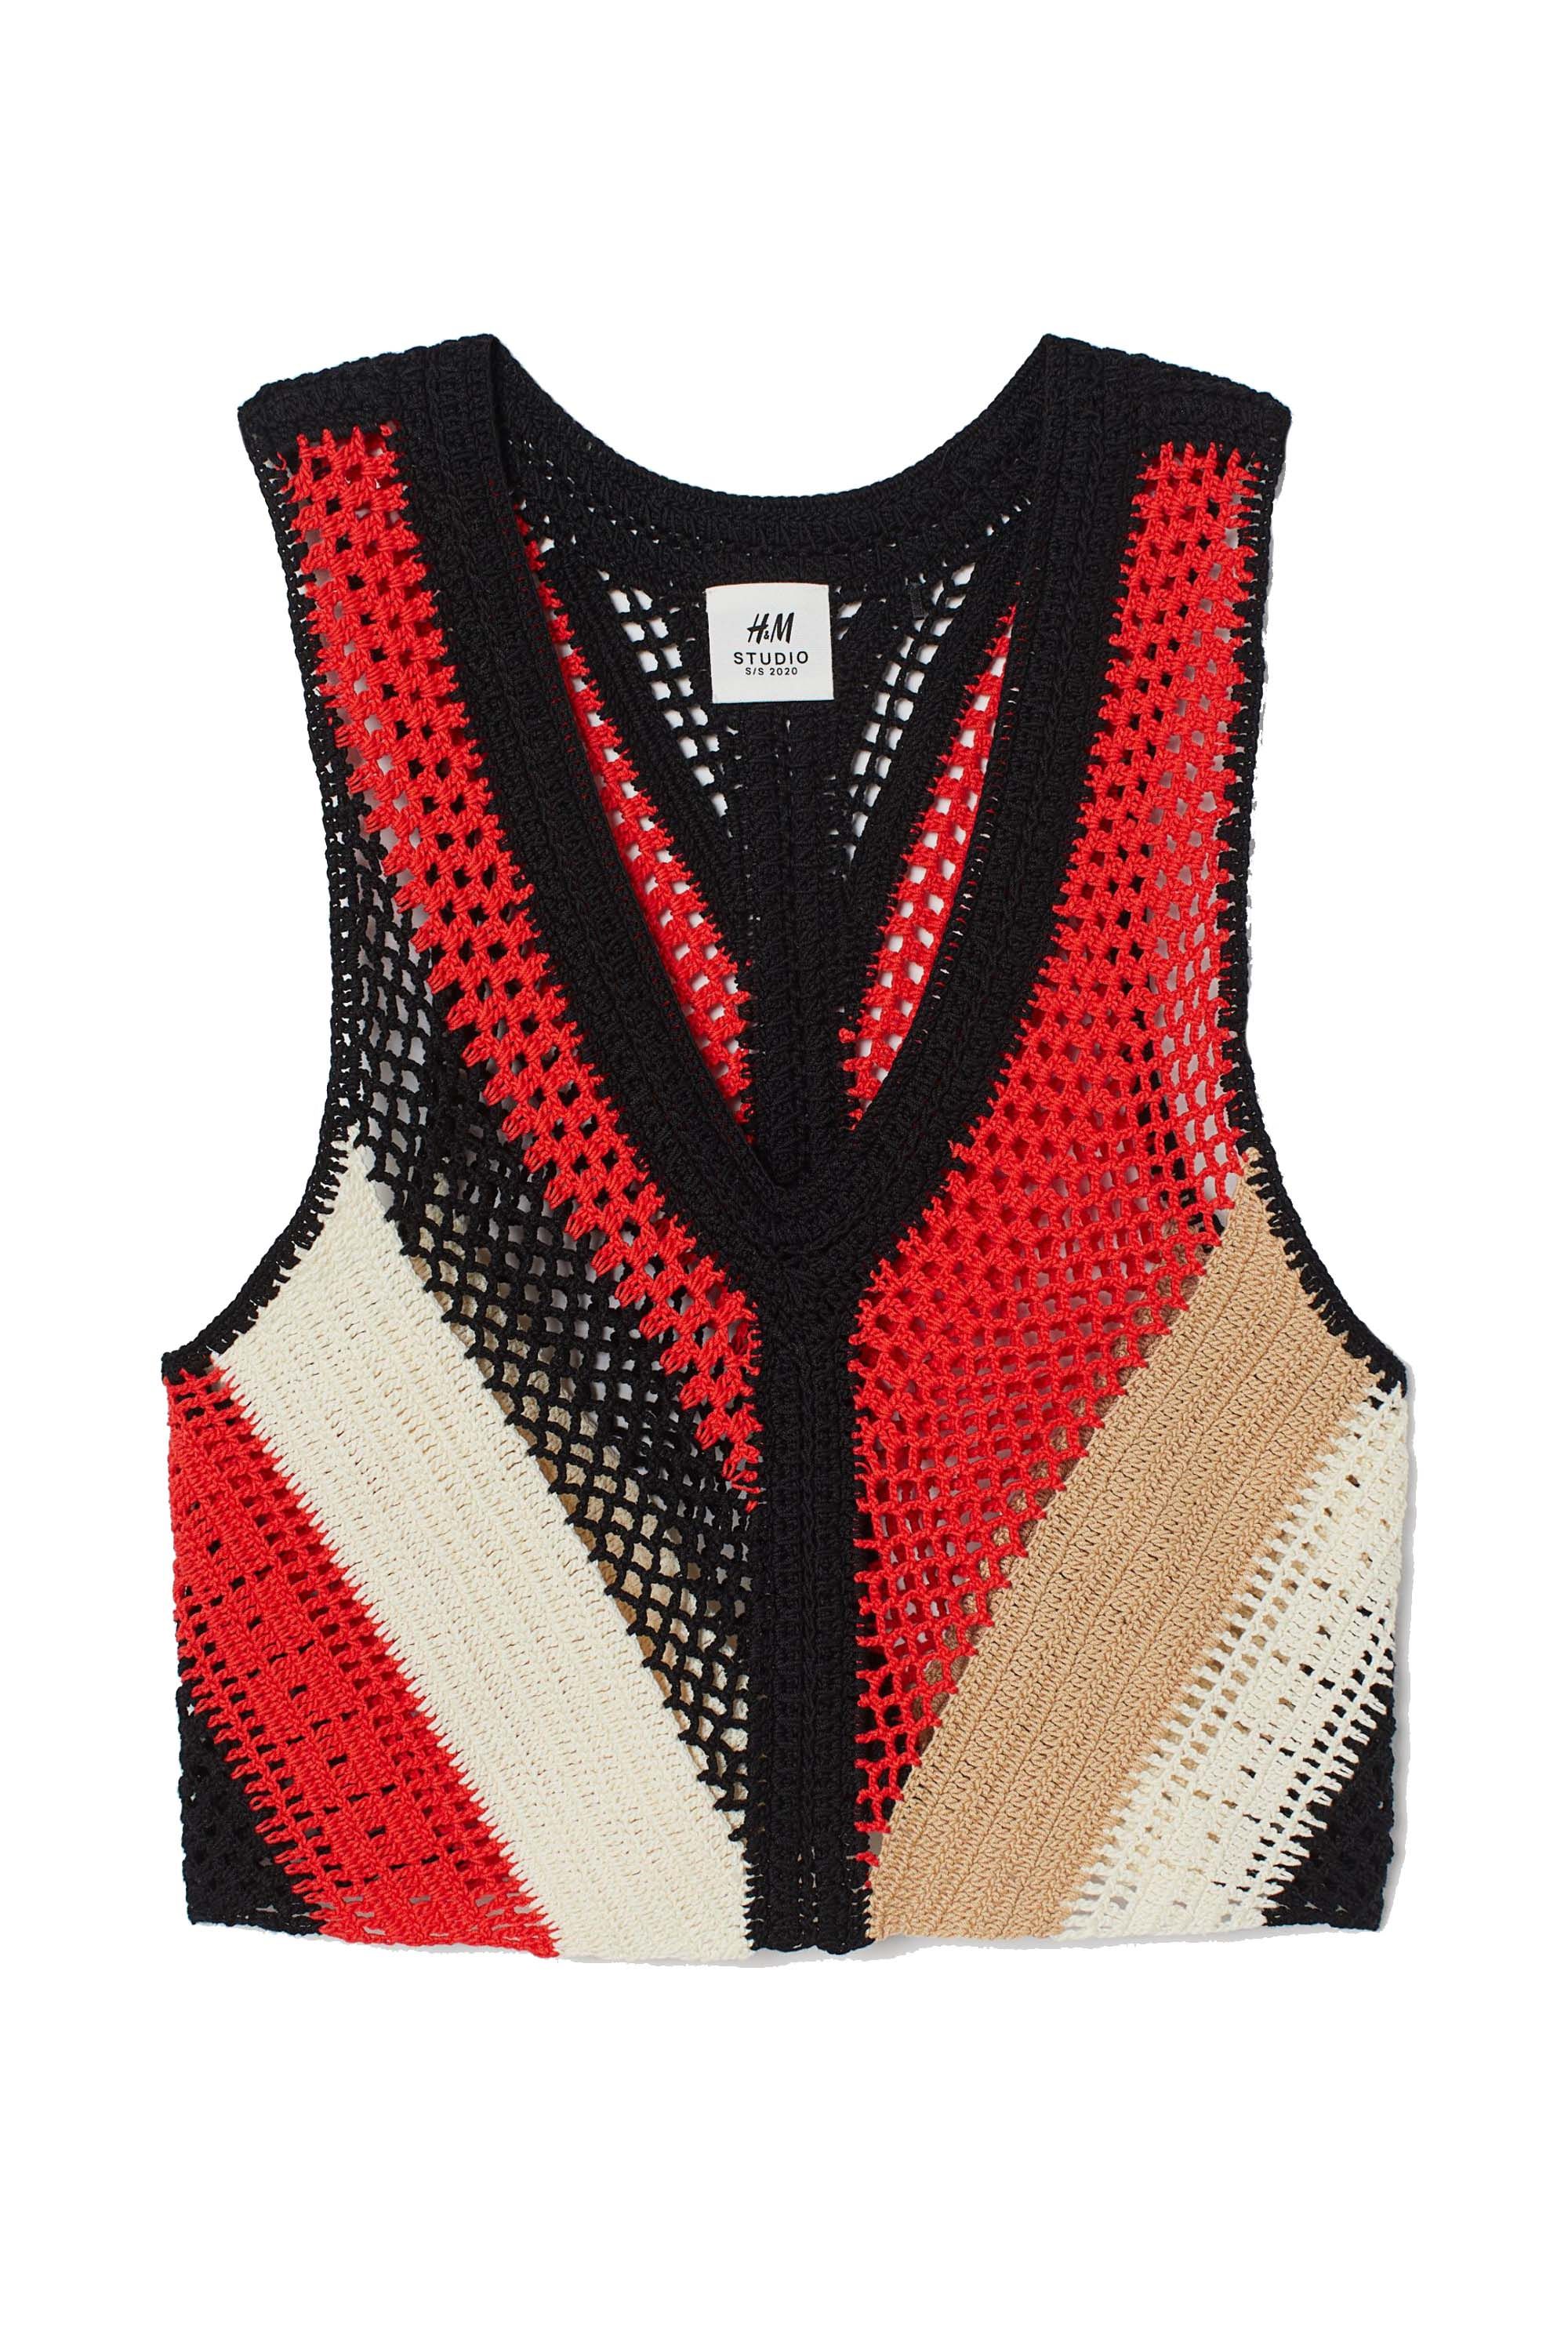 Virgin-wool sweater vest Farfetch Mädchen Kleidung Tops & Shirts Tops 